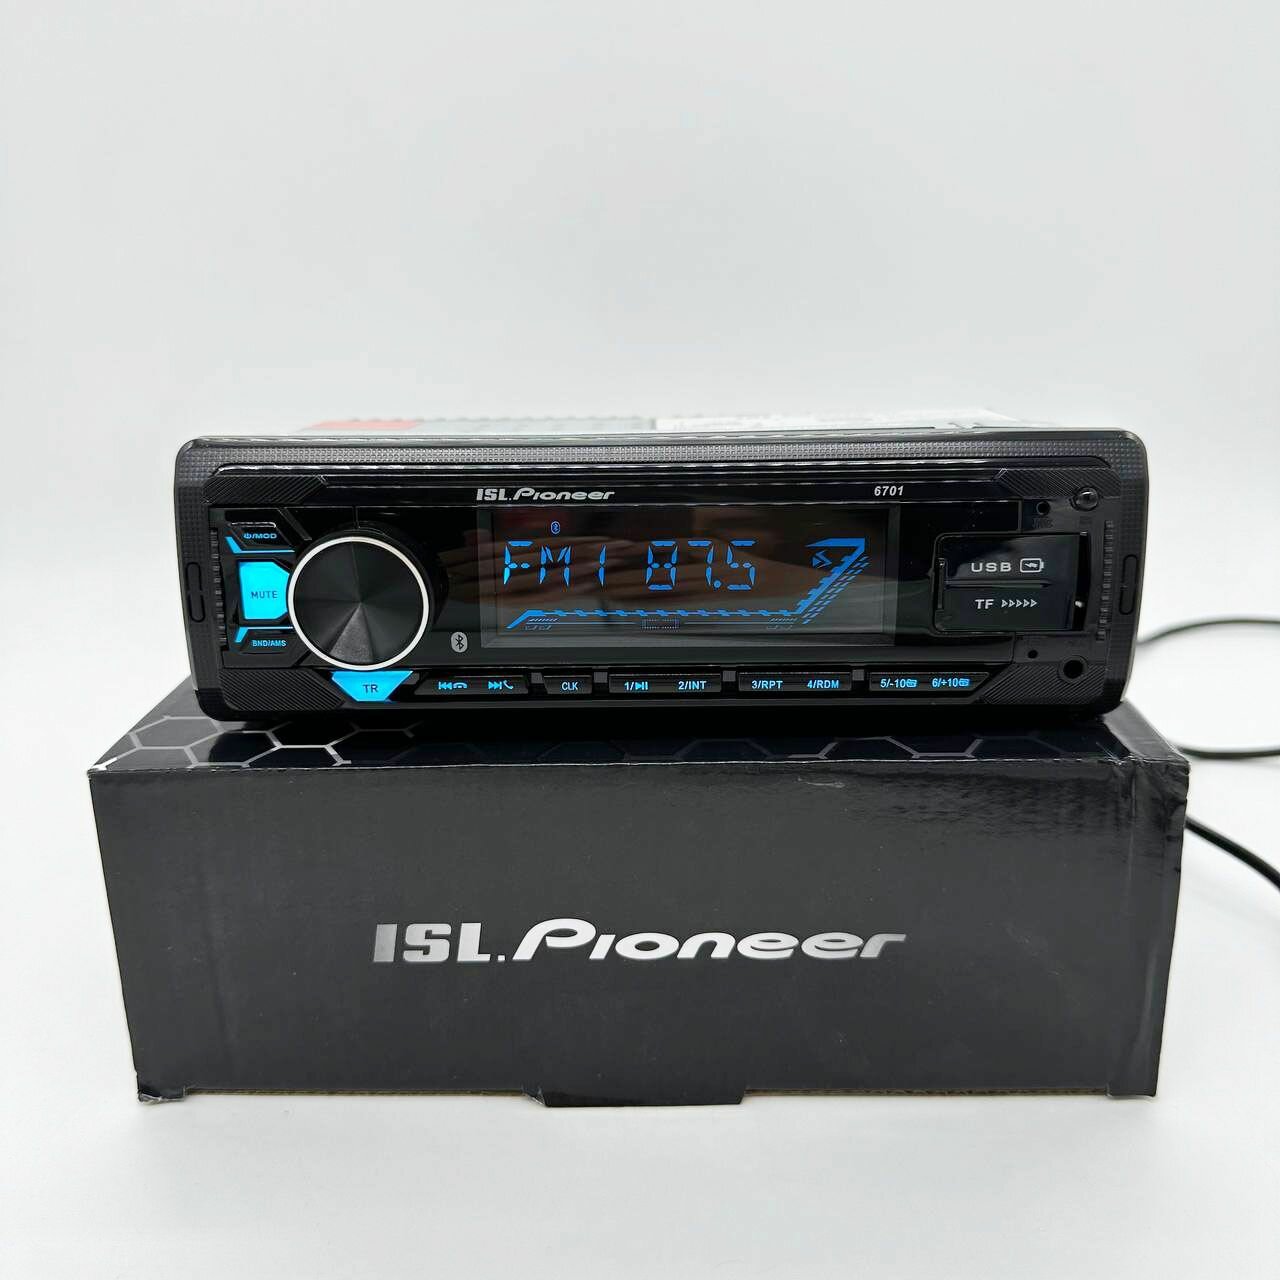 Автомагнитола в авто Pioneer 1 DIN / Автомобильная магнитола с Bluetooth в машину / Магнитофон Пионер с USB AUX для автомобиля с подсветкой + пульт ДУ